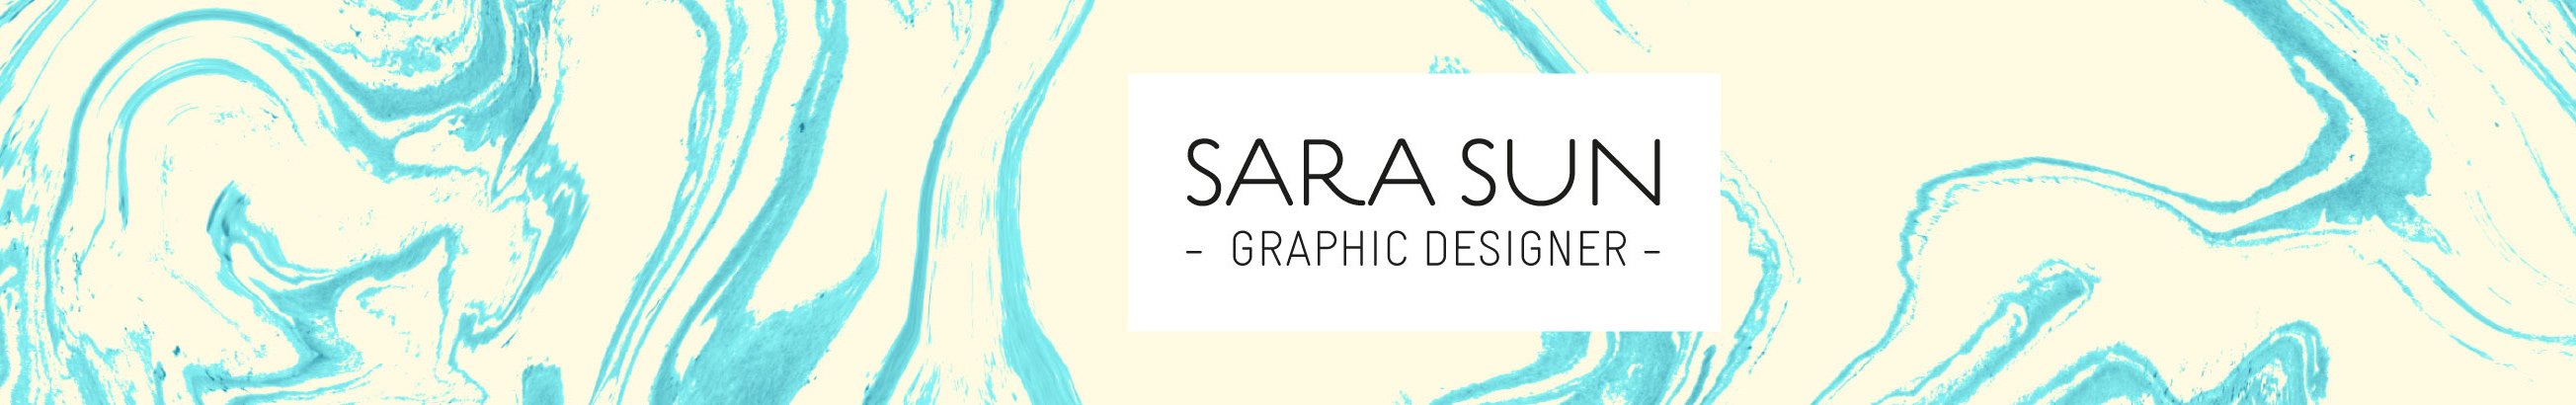 Sara Sun's profile banner